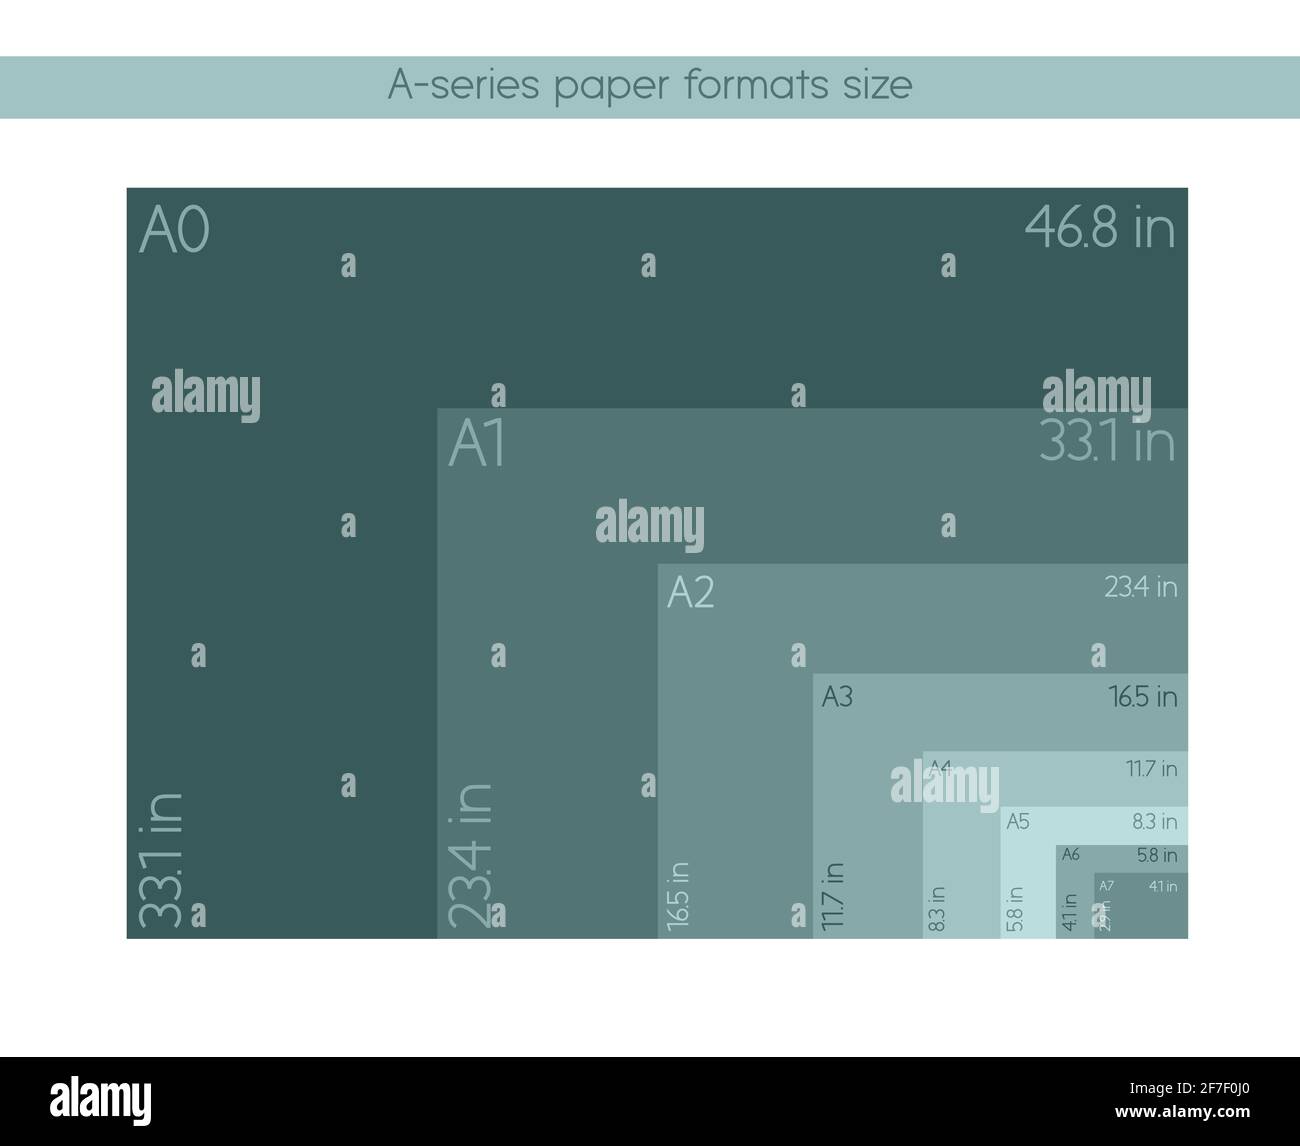 Dimensions de formats de papier A - A0, A1, A2, A3, A4, A5, A6, A7, a4  papier